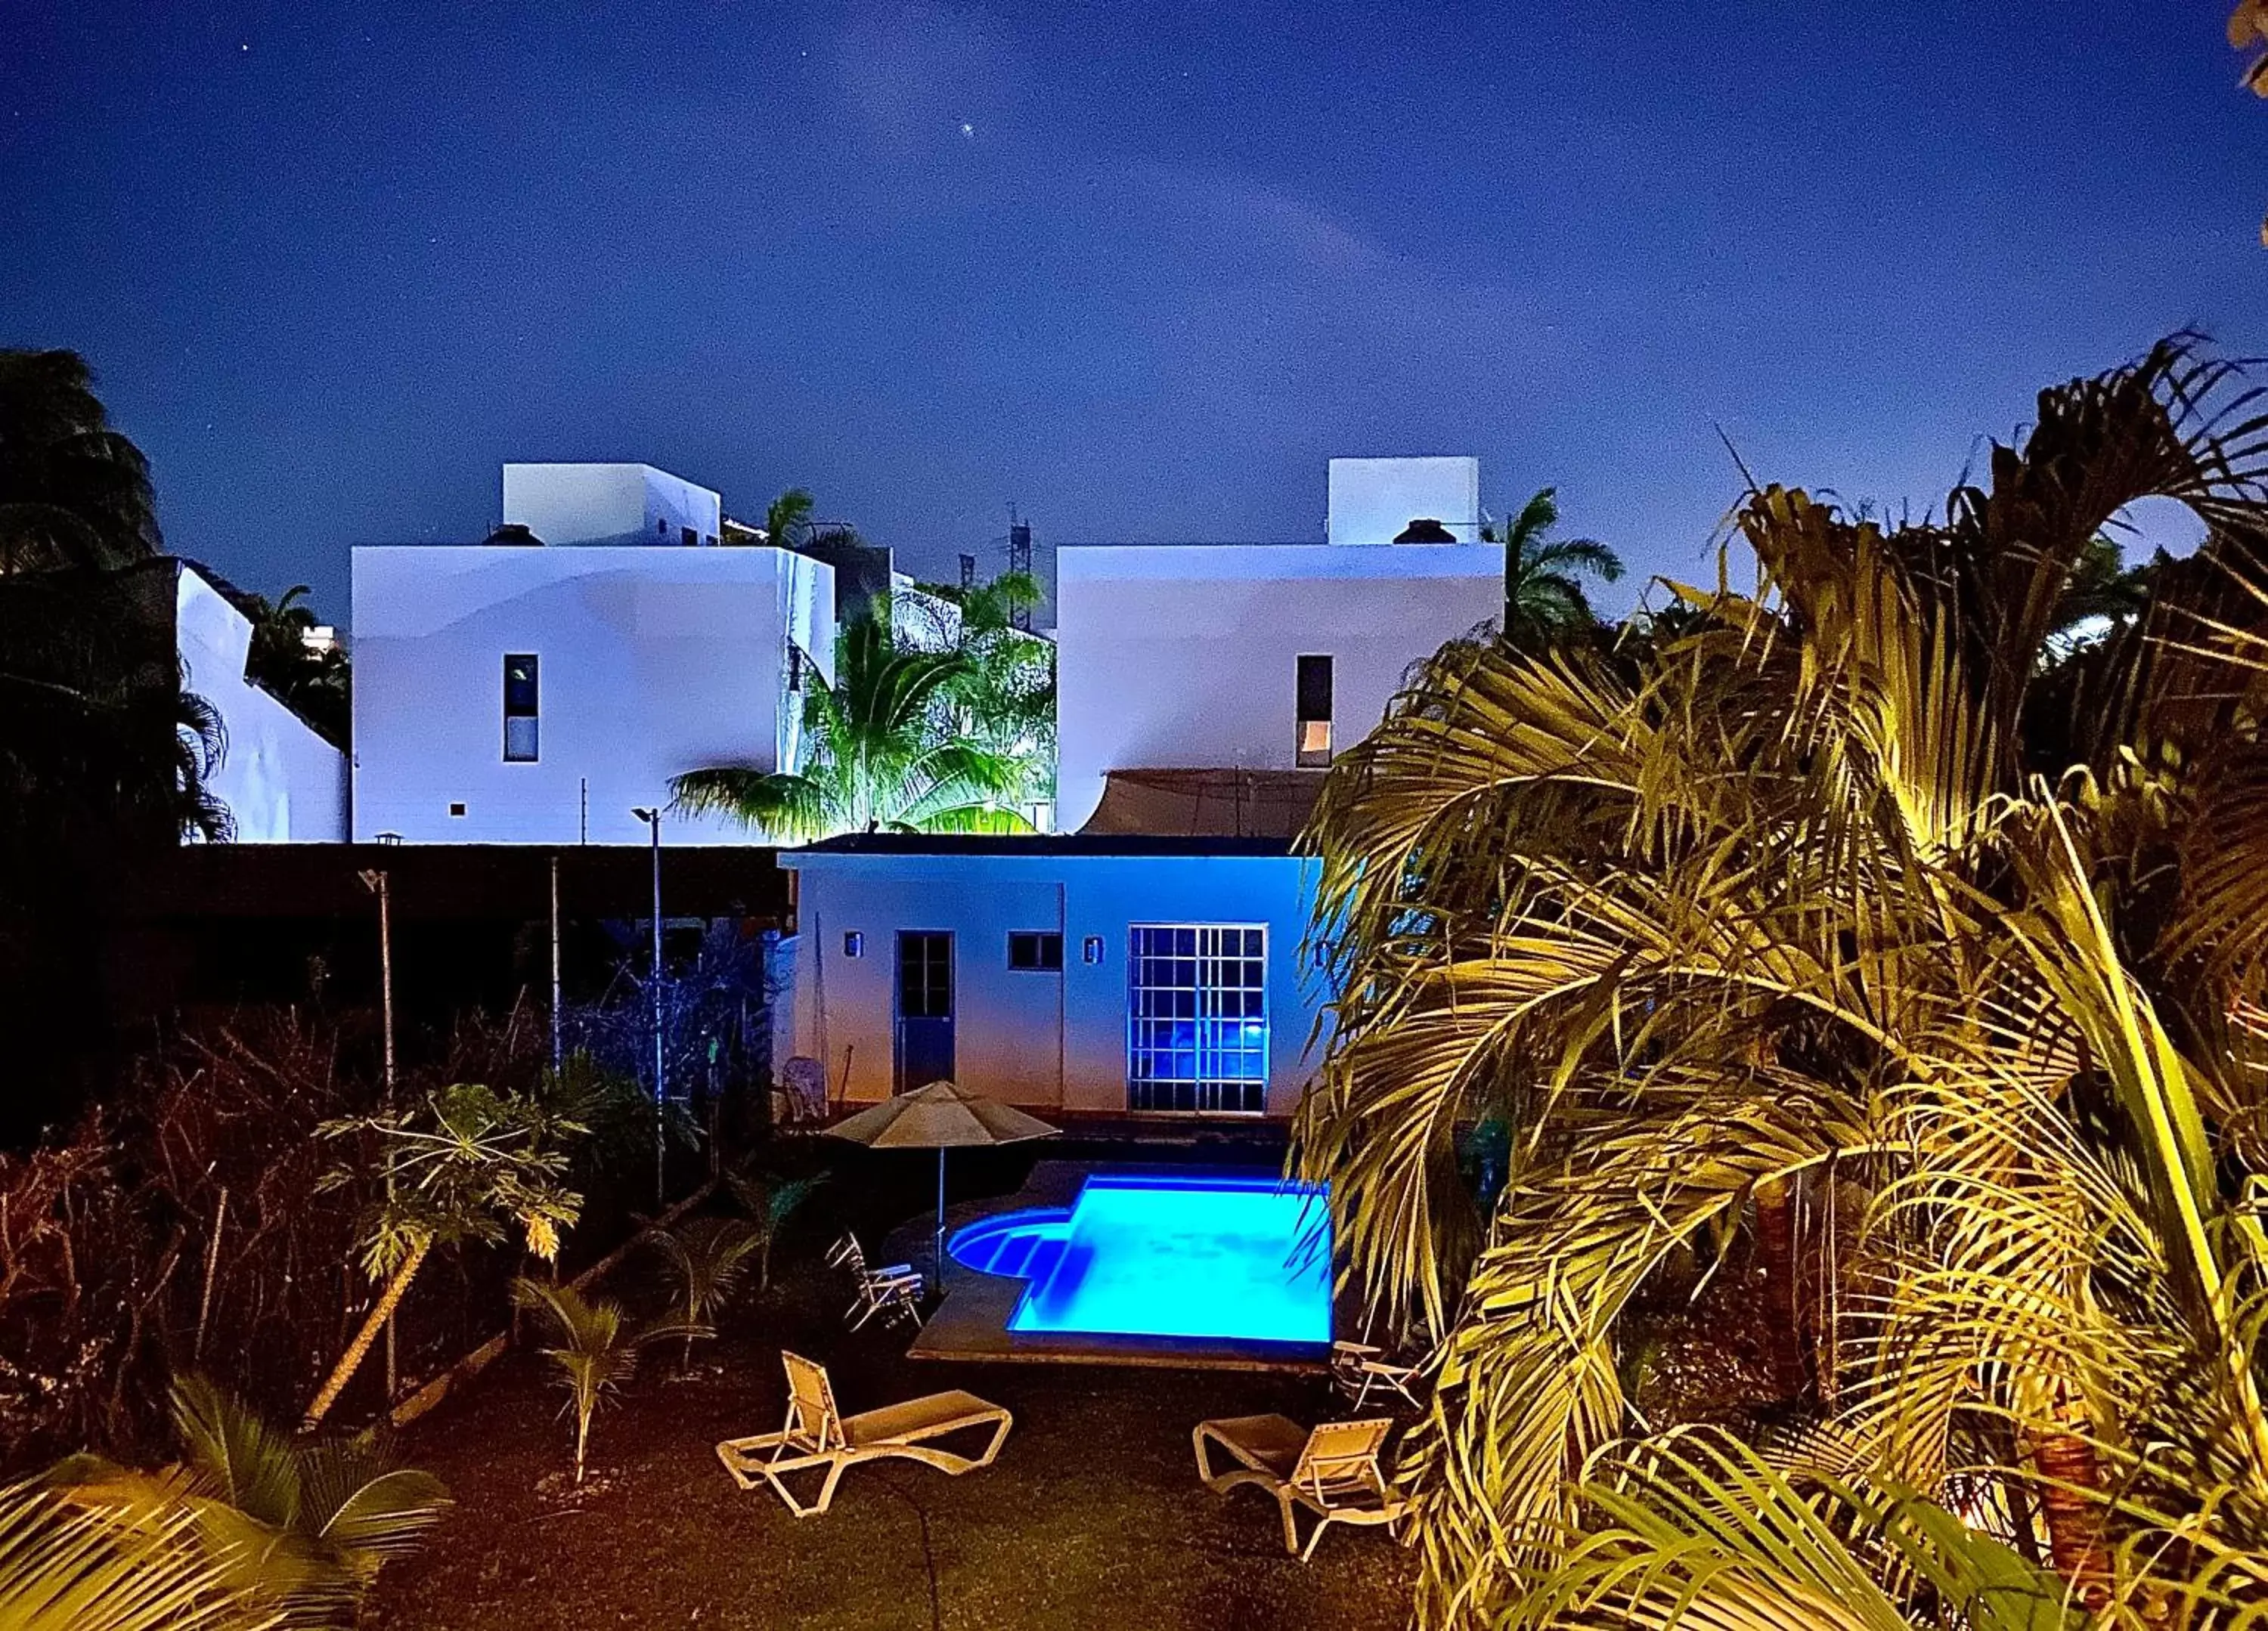 Night, Pool View in Cancun-Soho